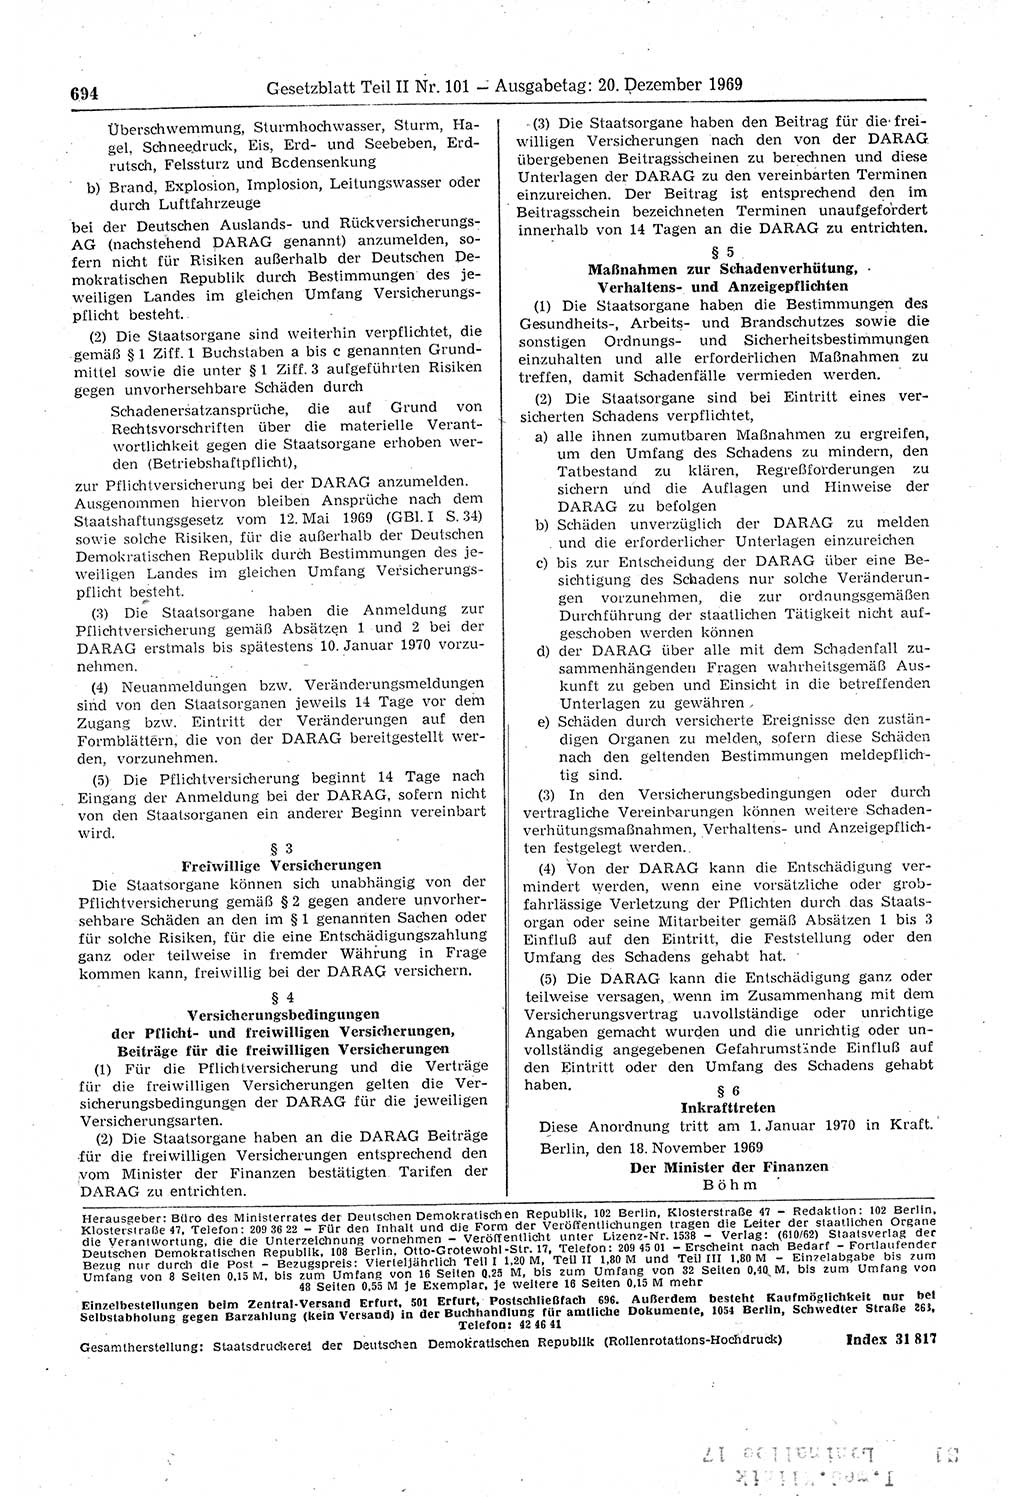 Gesetzblatt (GBl.) der Deutschen Demokratischen Republik (DDR) Teil ⅠⅠ 1969, Seite 694 (GBl. DDR ⅠⅠ 1969, S. 694)